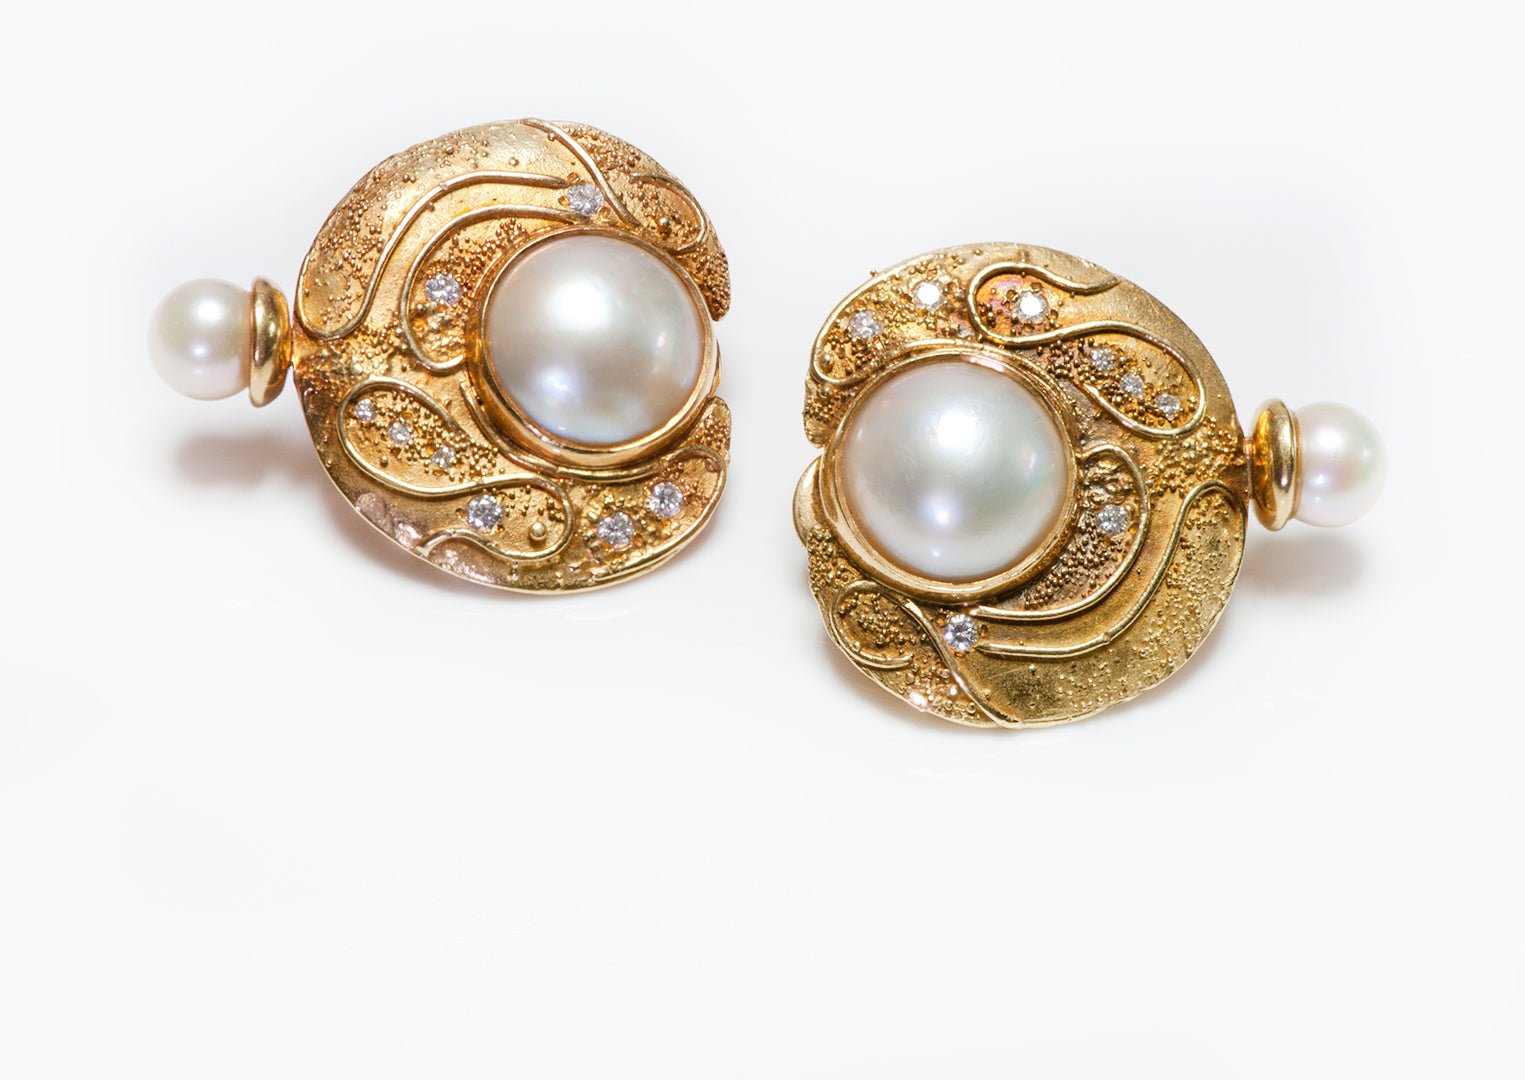 Elizabeth Gage 18K Yellow Gold Diamond Pearl Earrings - DSF Antique Jewelry